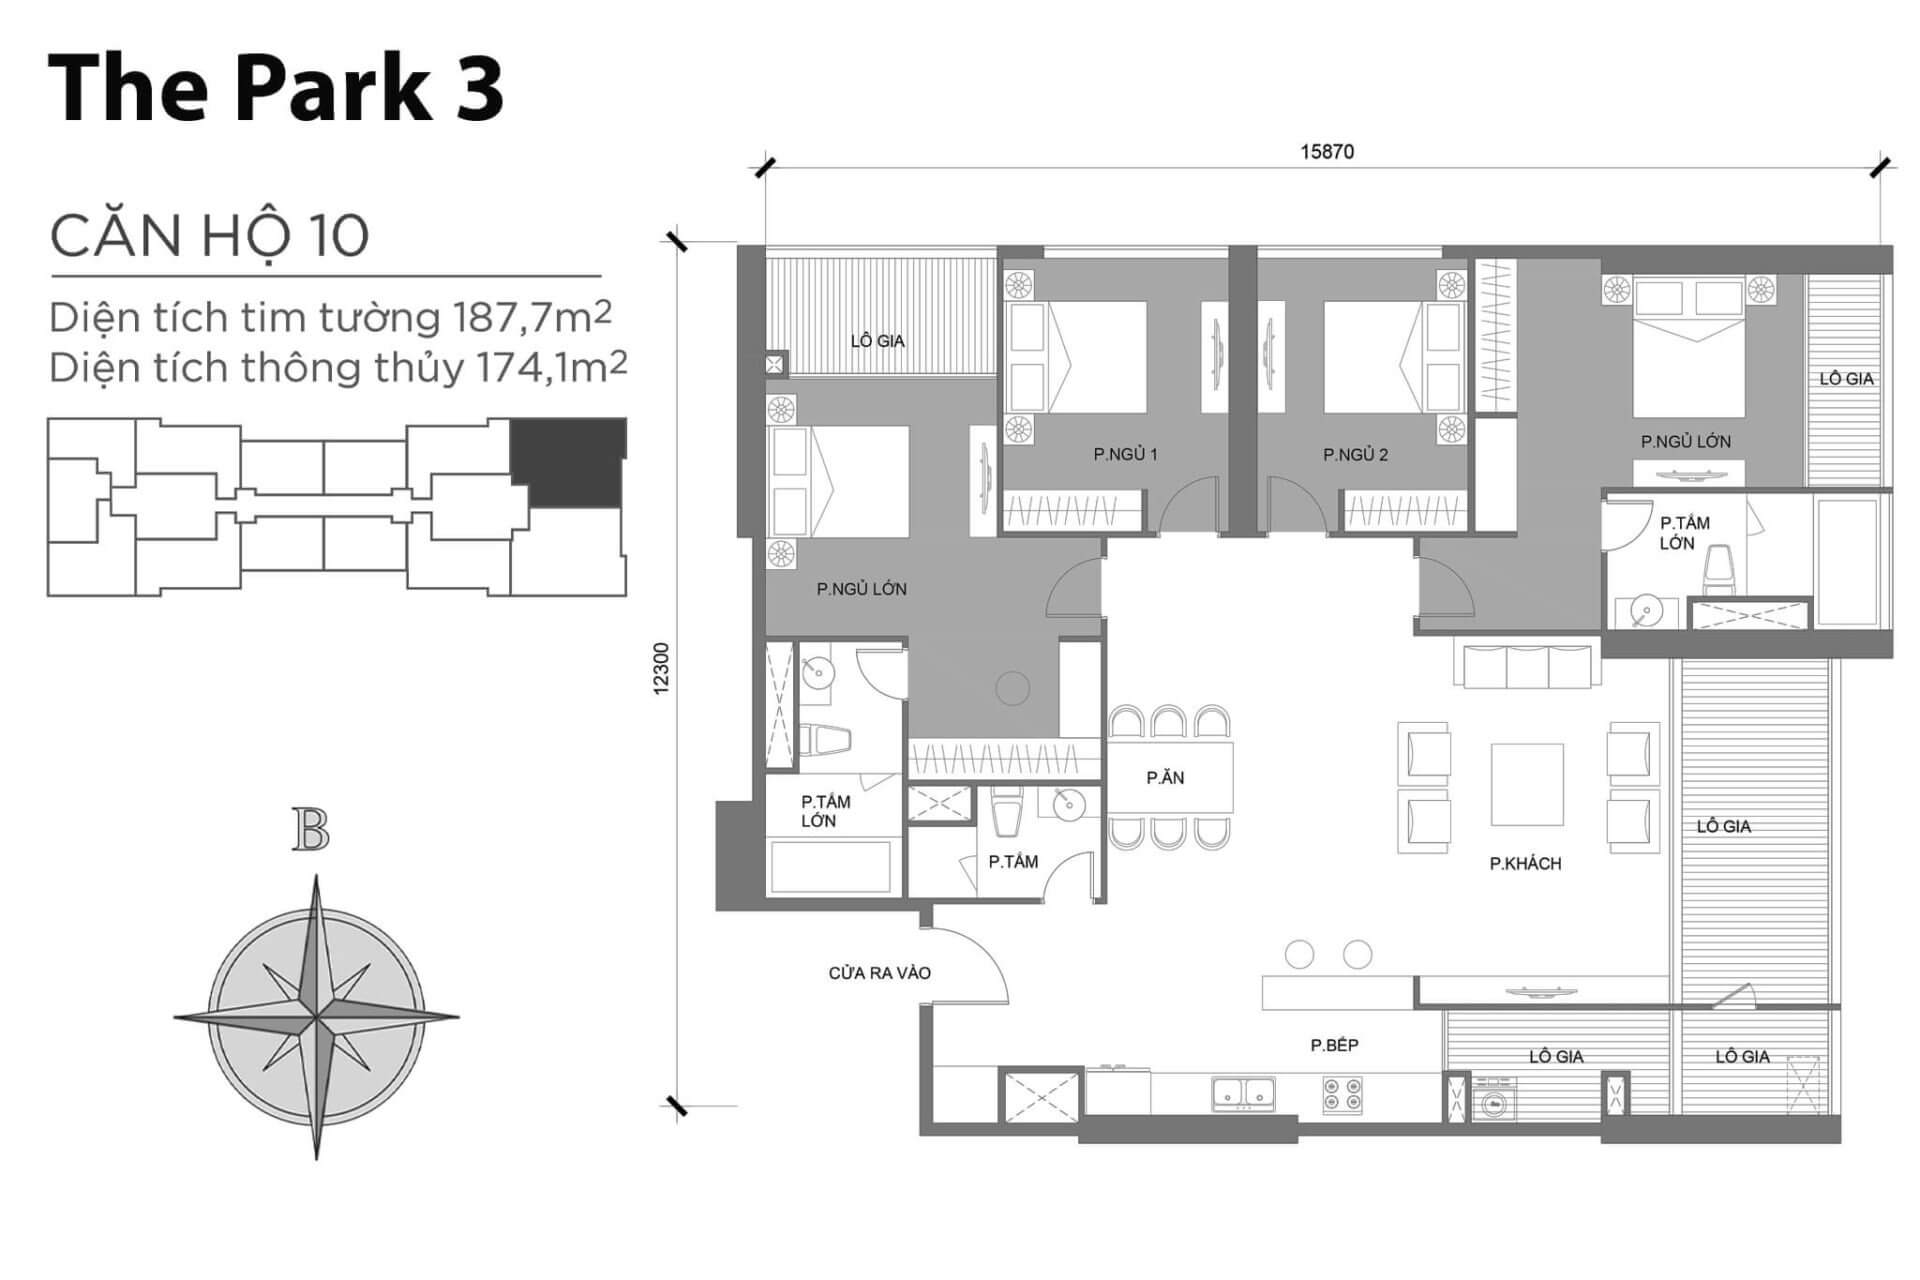 mặt bằng layout căn hộ số 10 Park 3 Vinhomes Central Park